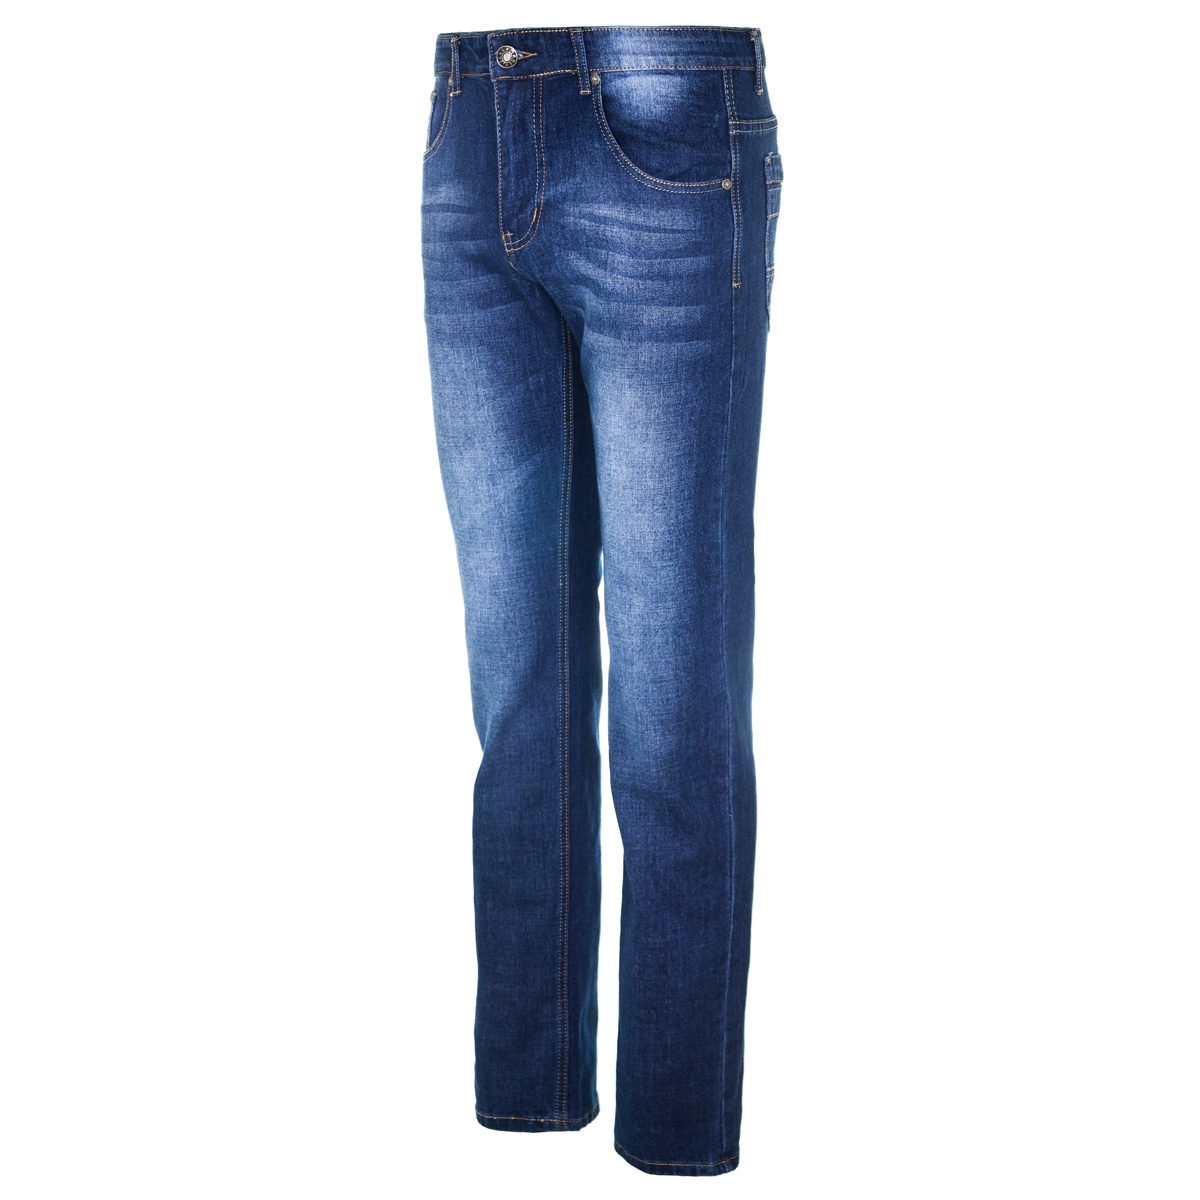 Муж. джинсы арт. 12-0156 Синий р. 30 Китай, размер 30 - фото 2